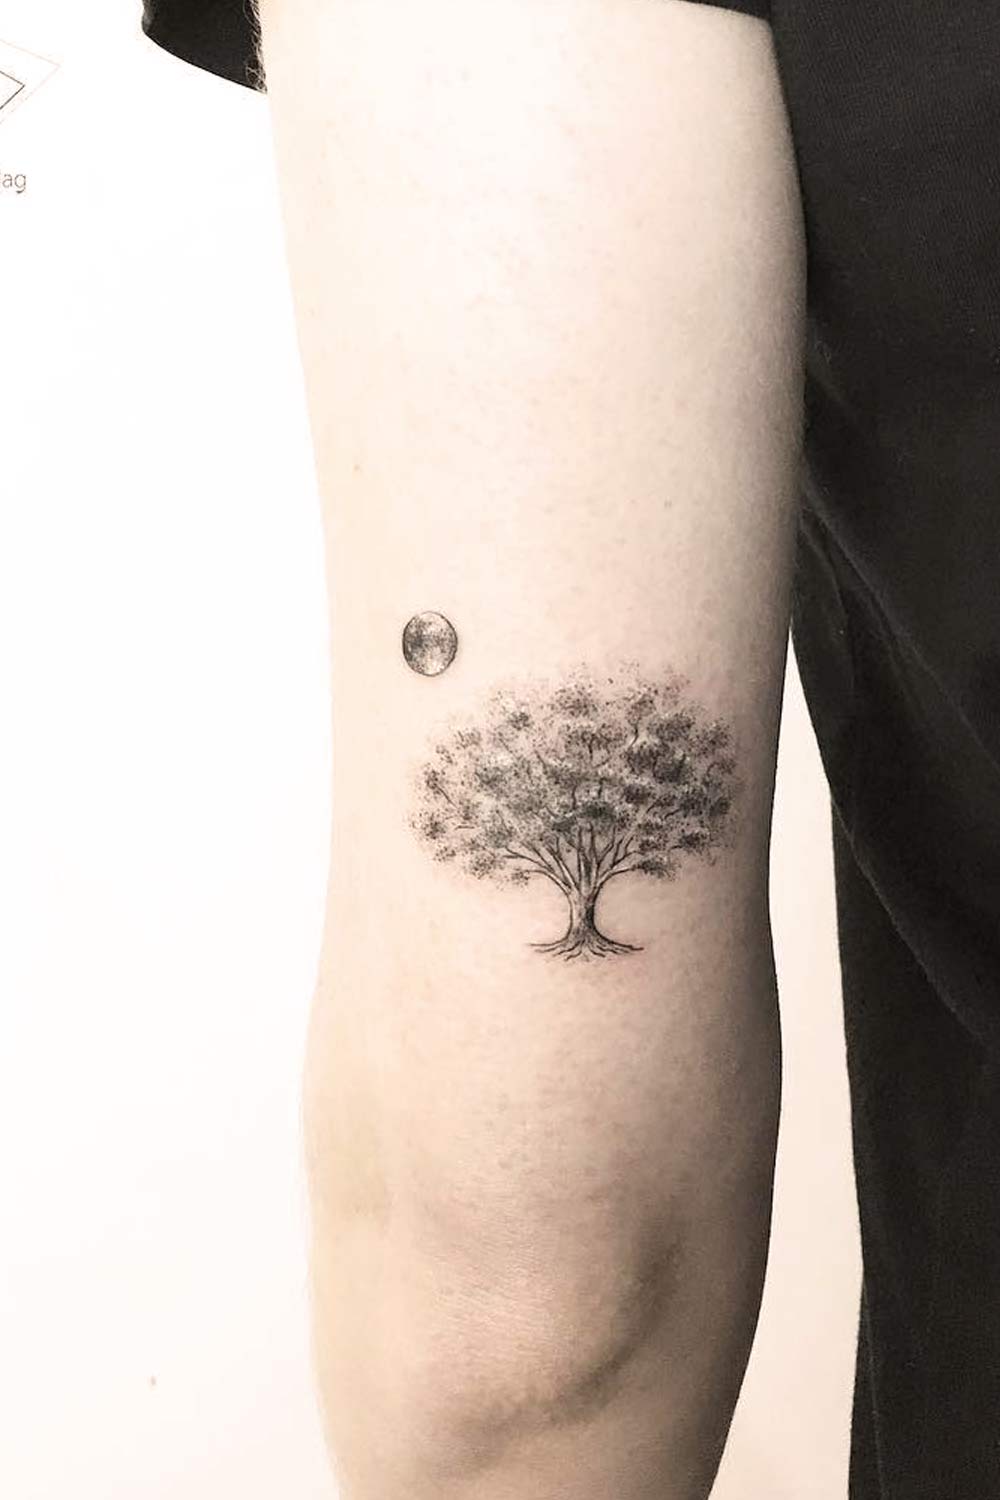 Full Moon with Tree Tattoo